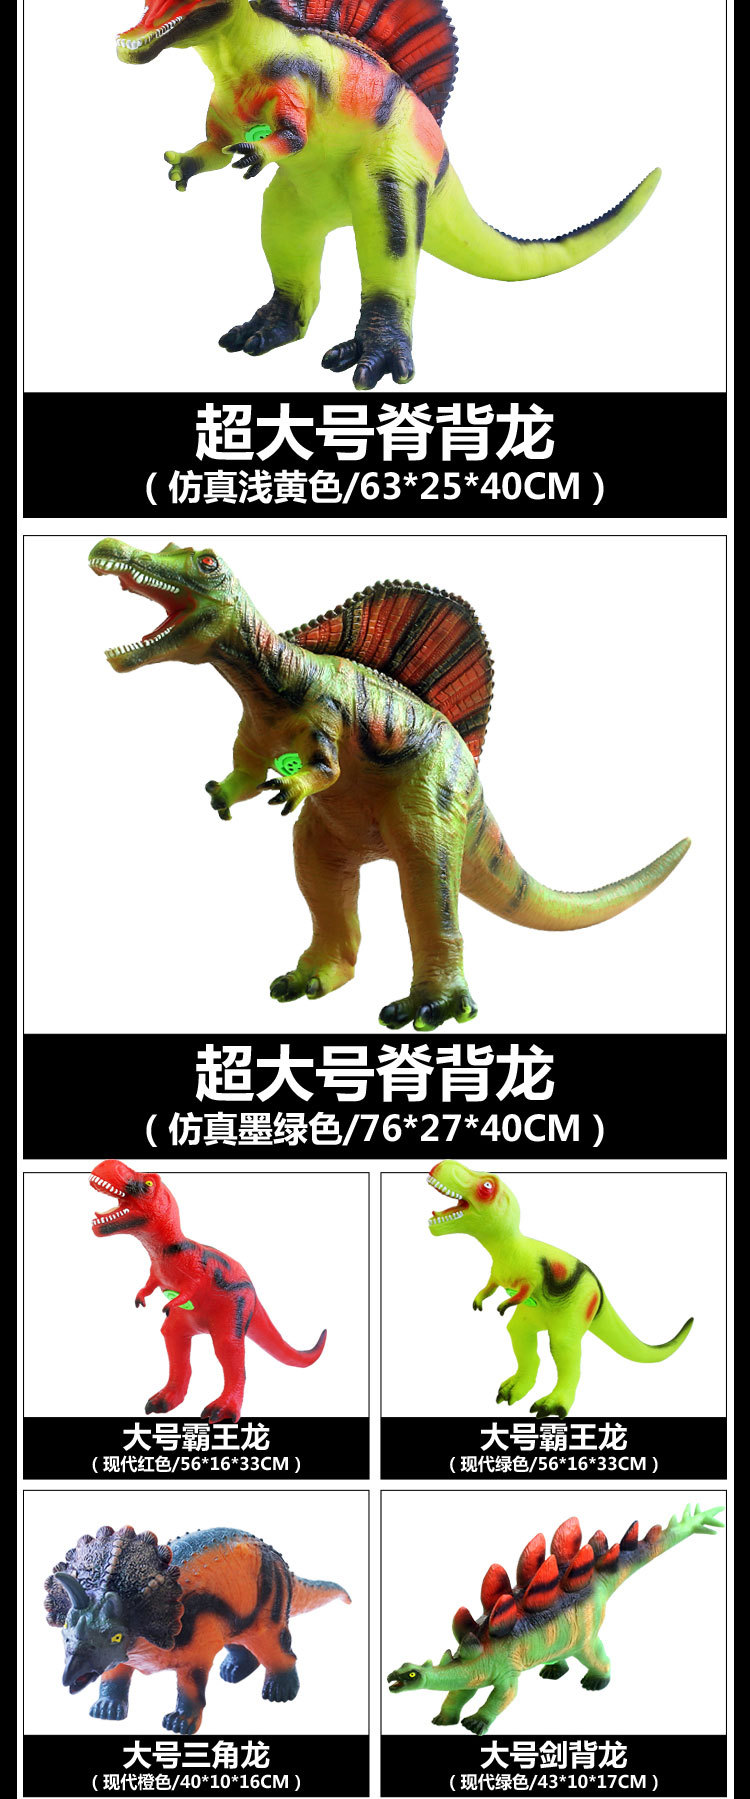 仿真软胶发声恐龙玩具儿童电动霸王龙动物超大号模型套装塑胶男孩